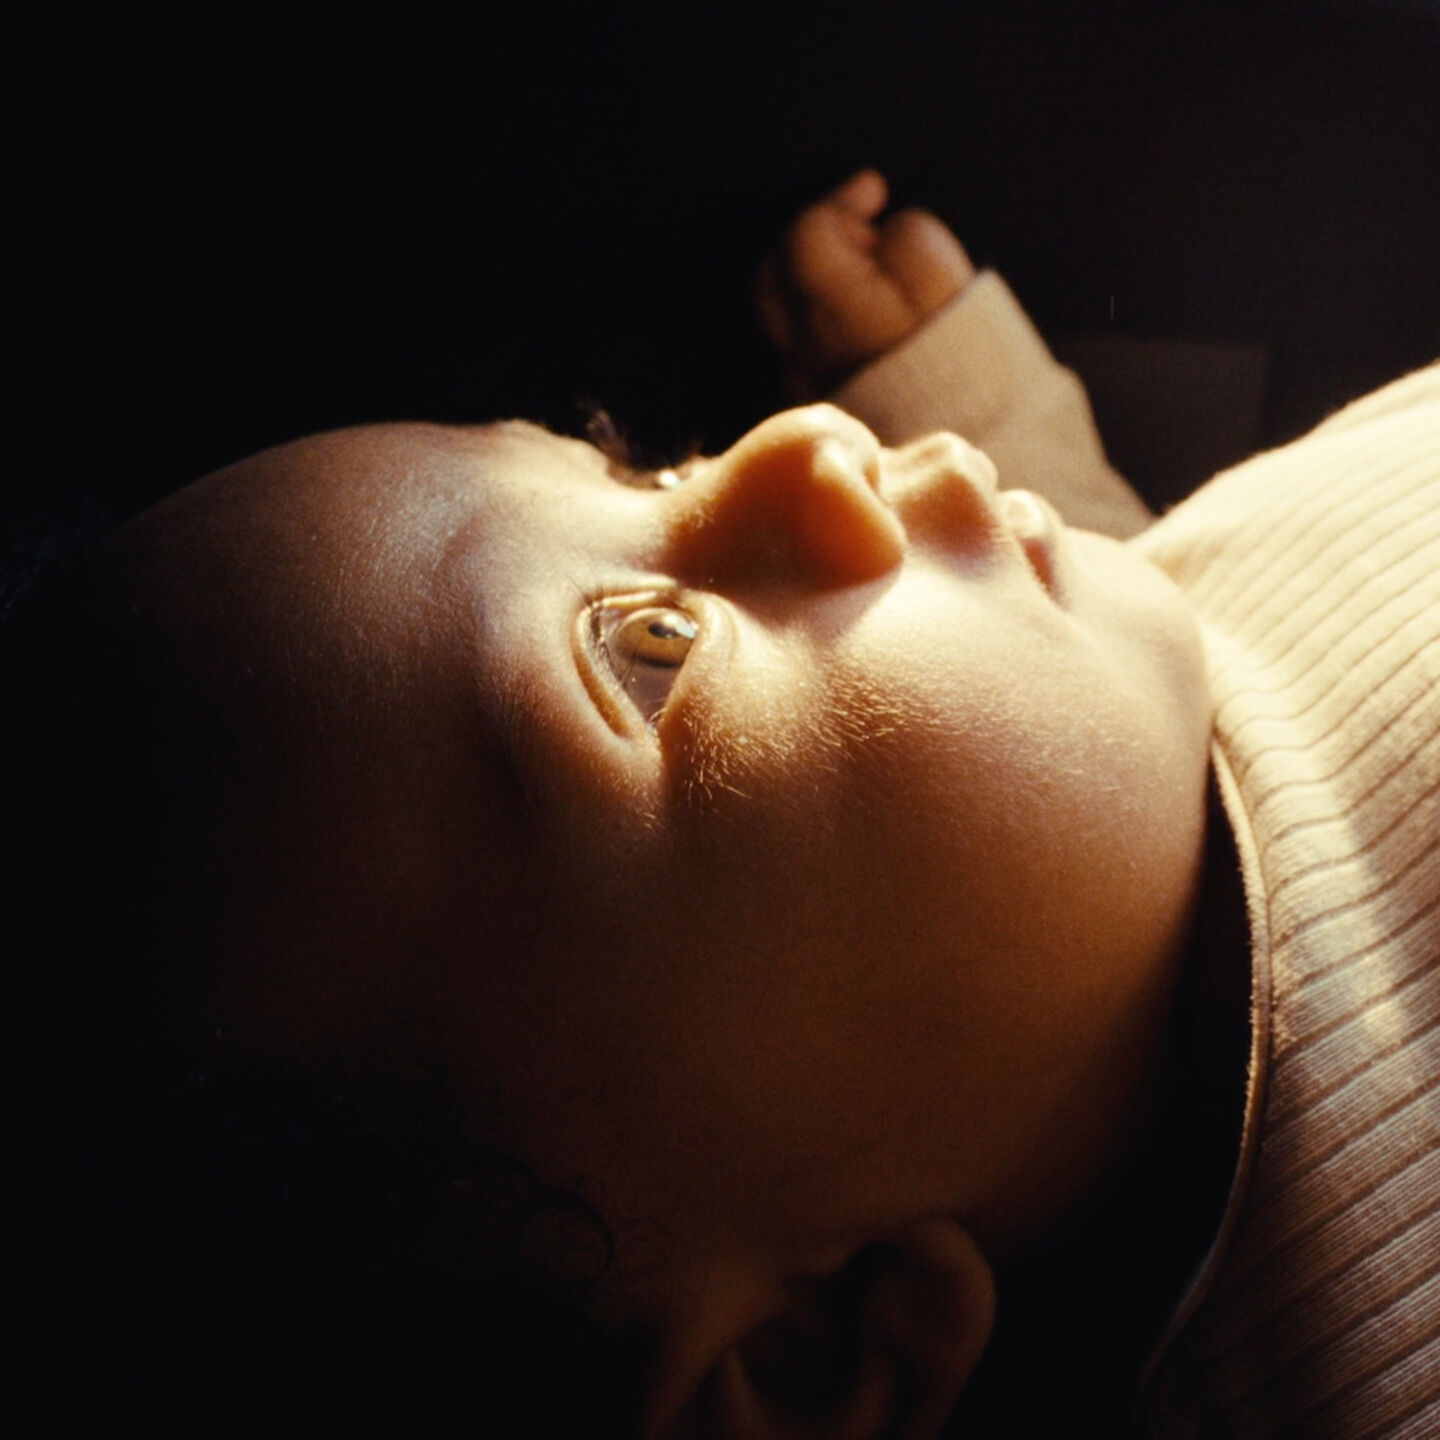 暖かい太陽に照らされて、好奇心旺盛に目を見開いて何かを見上げる赤ちゃん。